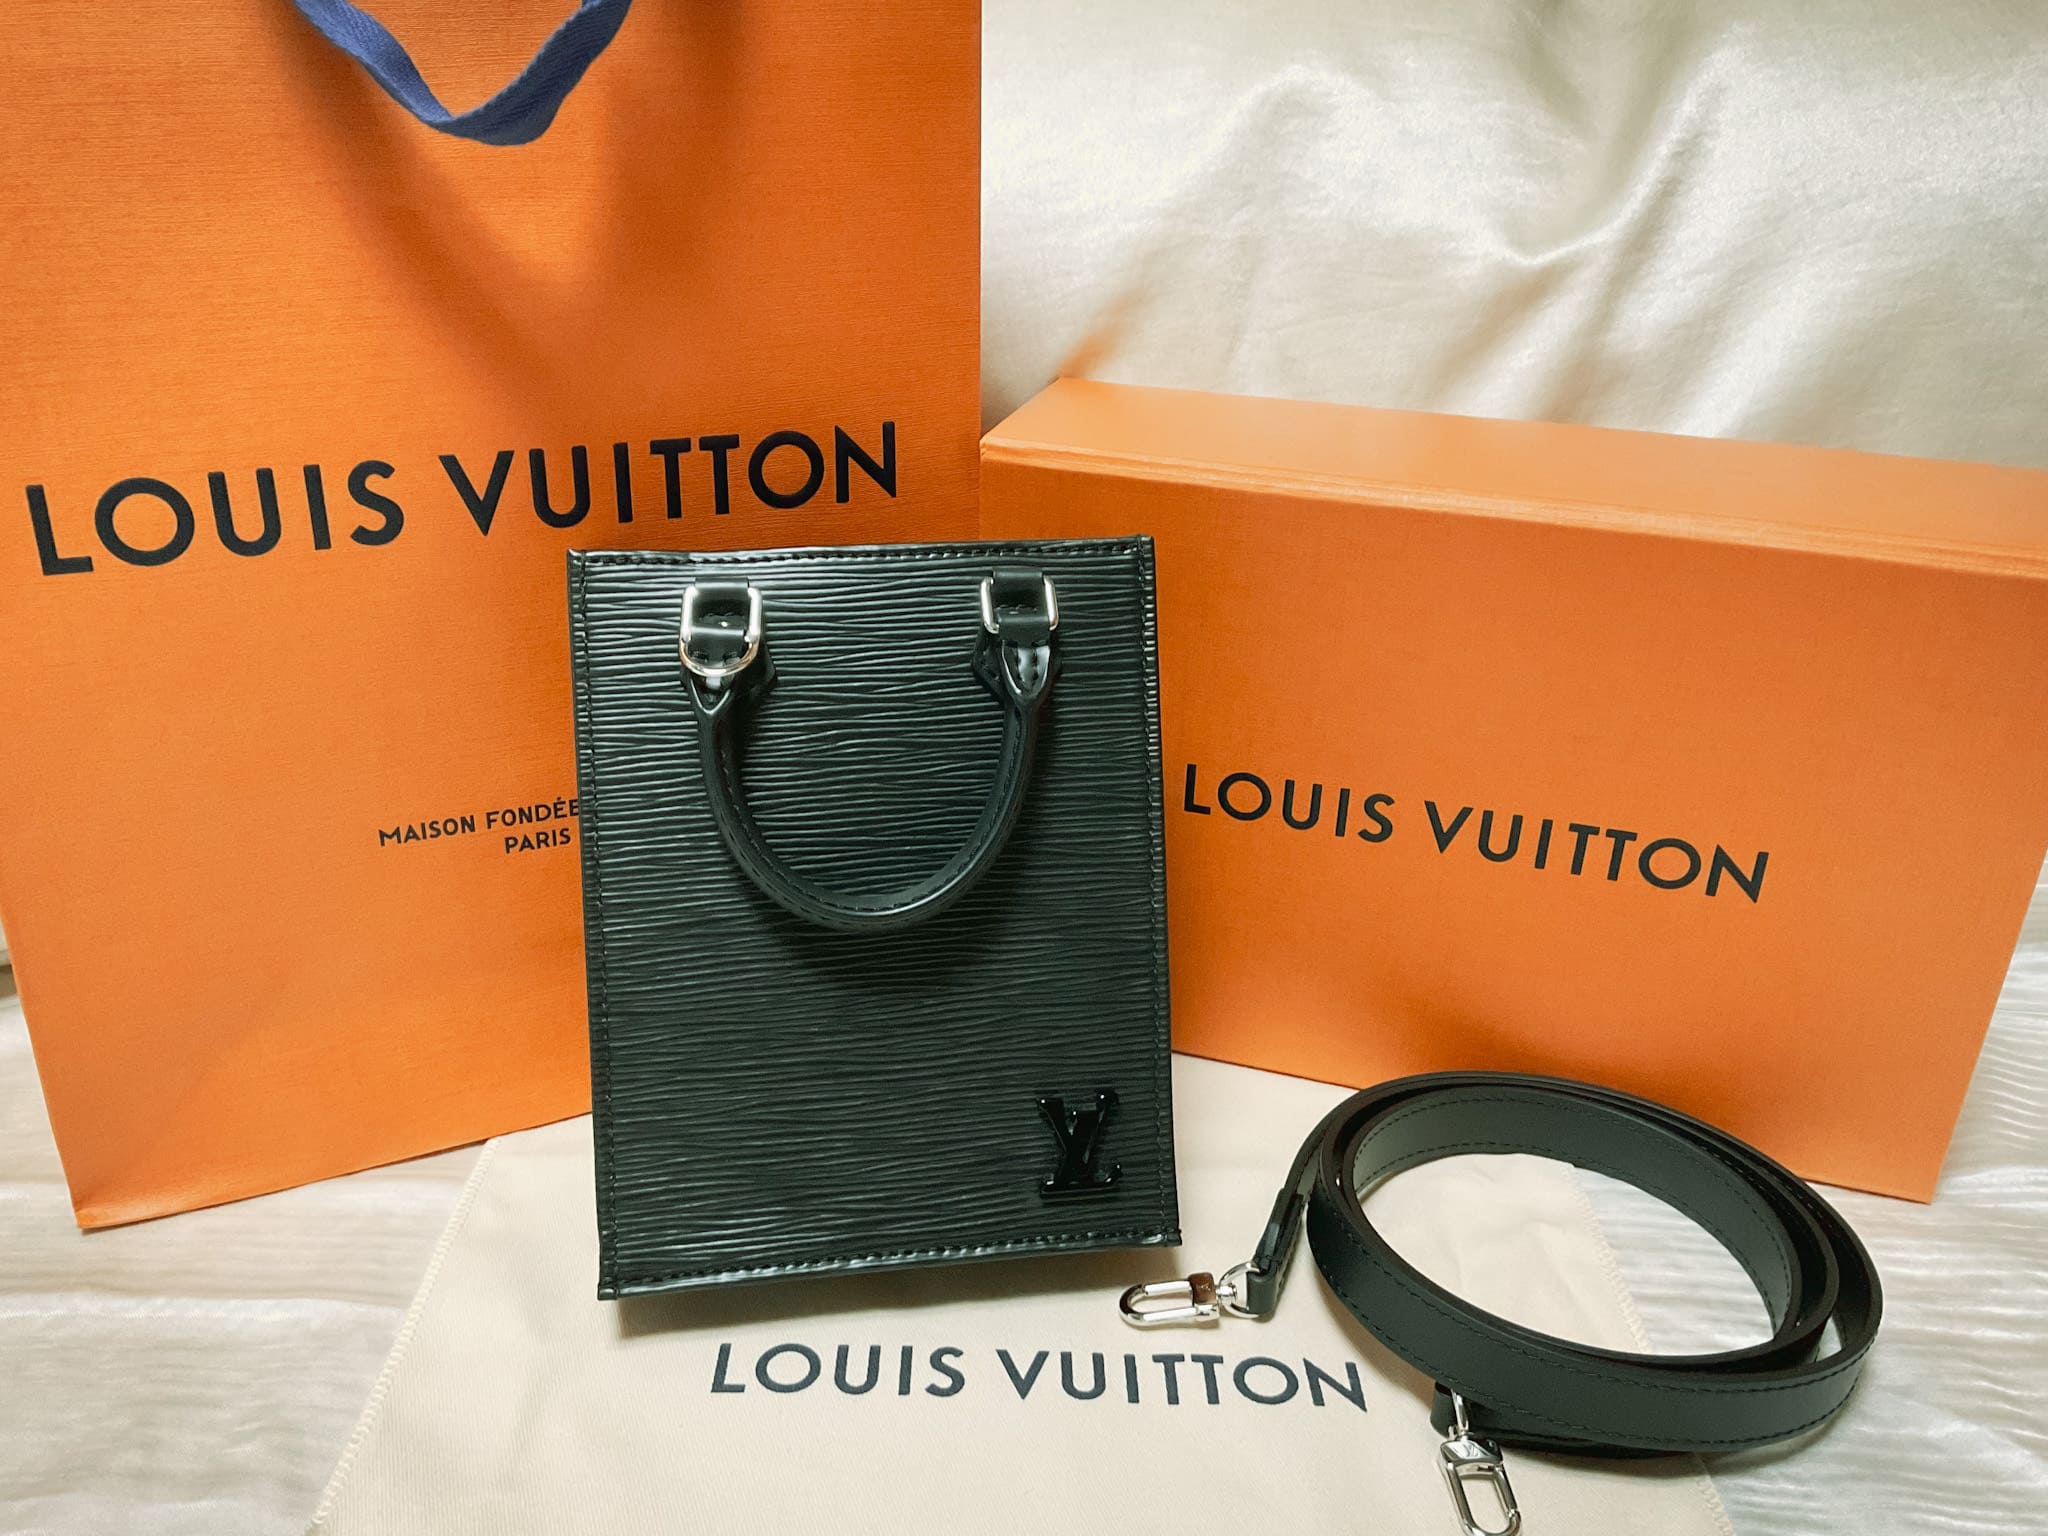 ブログ収入でルイ・ヴィトンの限定バッグを購入してみた【Louis Vuitton】 | よかぽーと